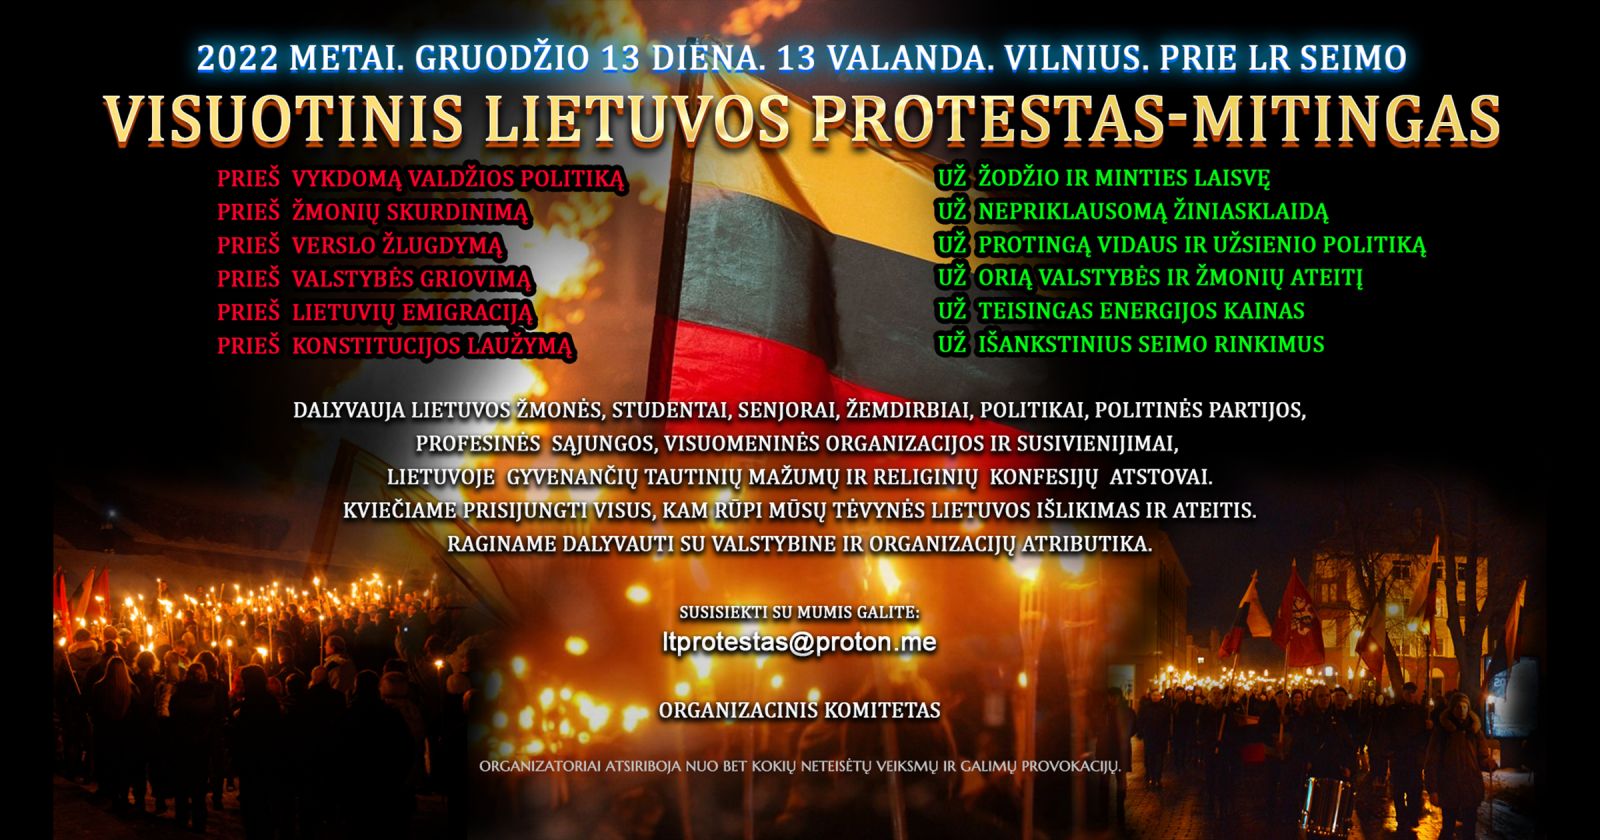 Vilniuje rengiamas  protestas-mitingas